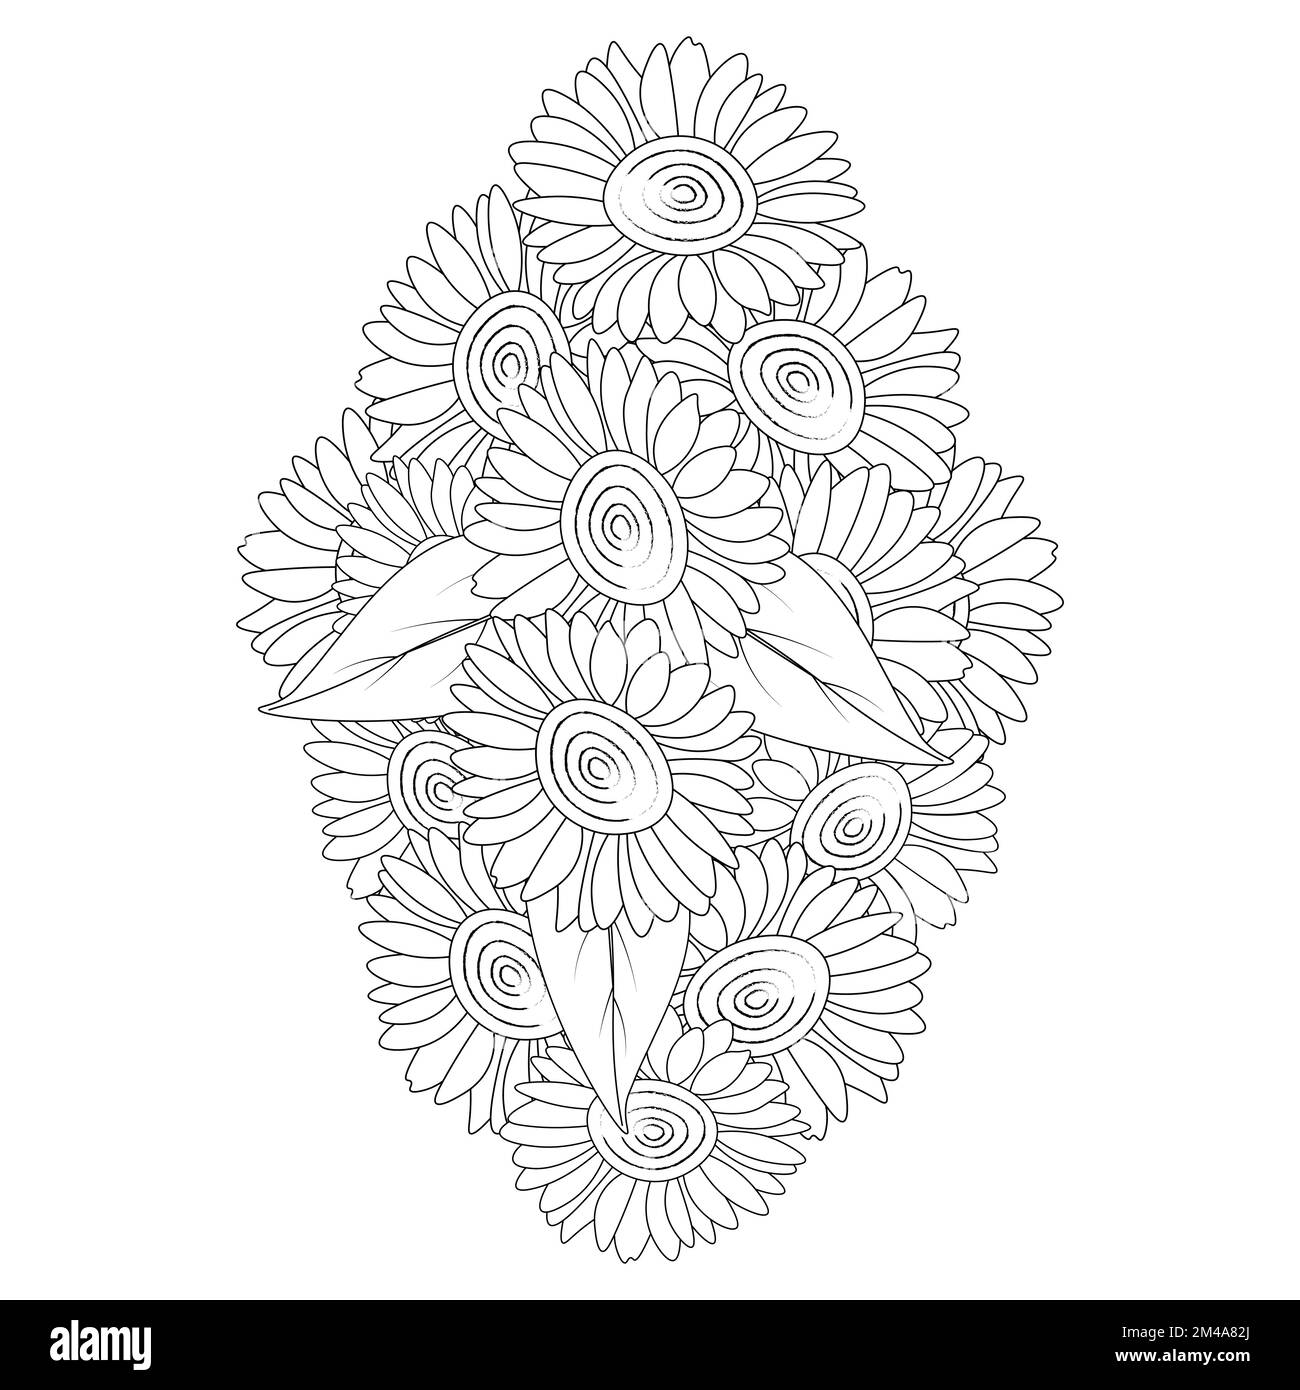 Sonnenblumen Zen Doodle Art Zeichnung im Vektordesign mit blühenden Blütenblättern für Erwachsene Malbuch Seite Stock Vektor